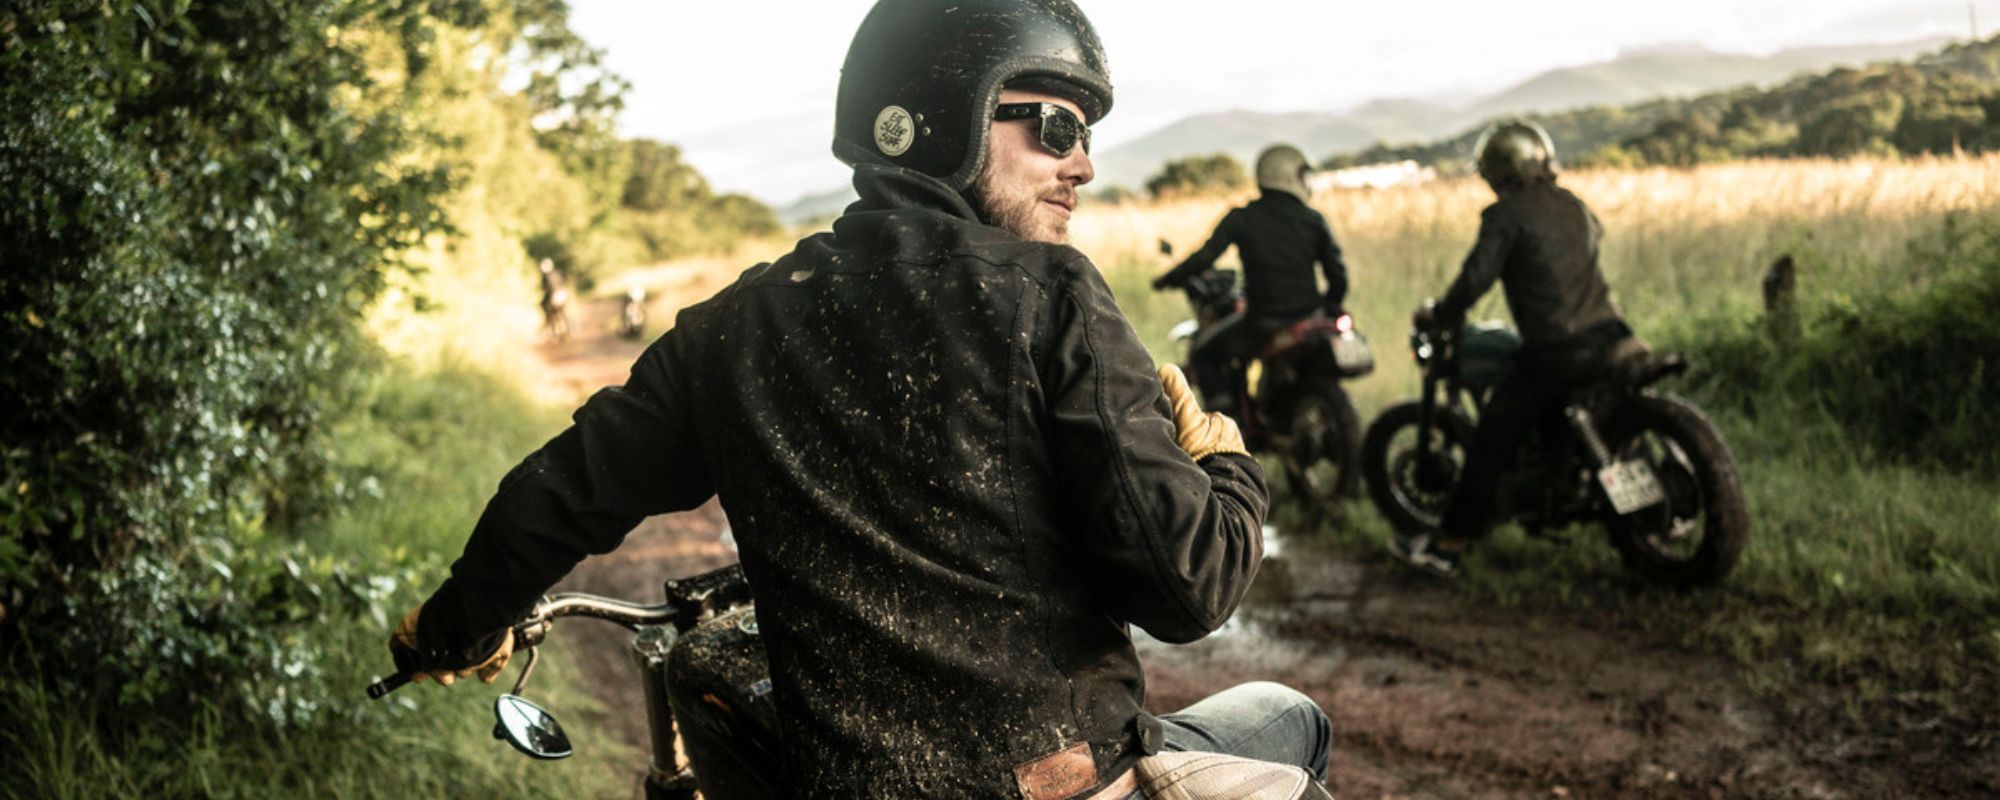 Motorradbekleidung richtig reinigen: So bleibt dein textiles Biker-Outfit in Topform